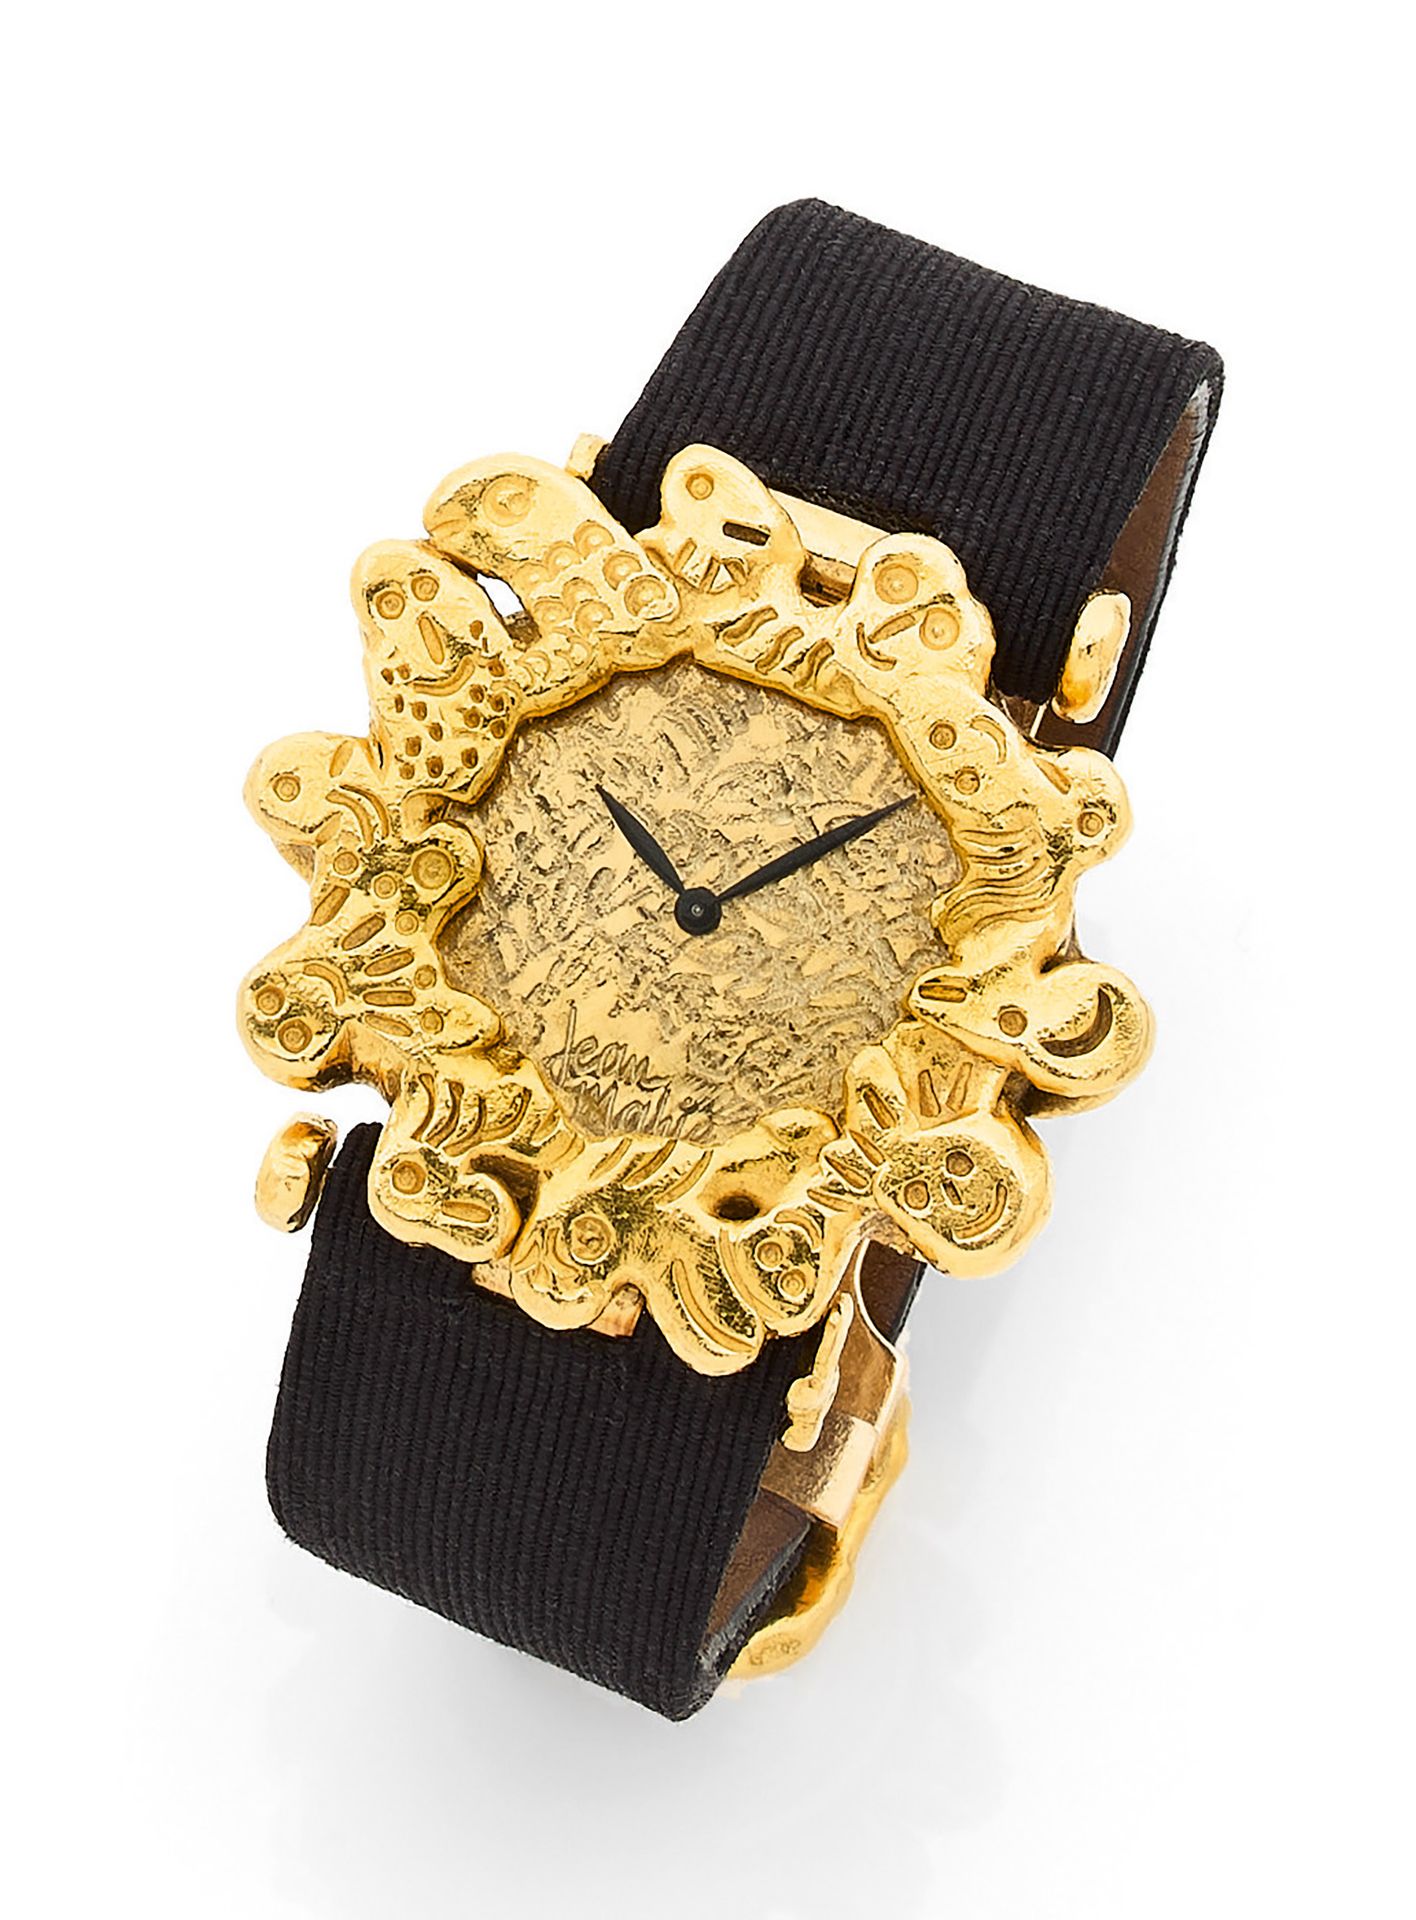 JEAN MAHIÉ JEAN MAHIÉ
Montre-bracelet de dame en or 18K (750), le cadran orné de&hellip;